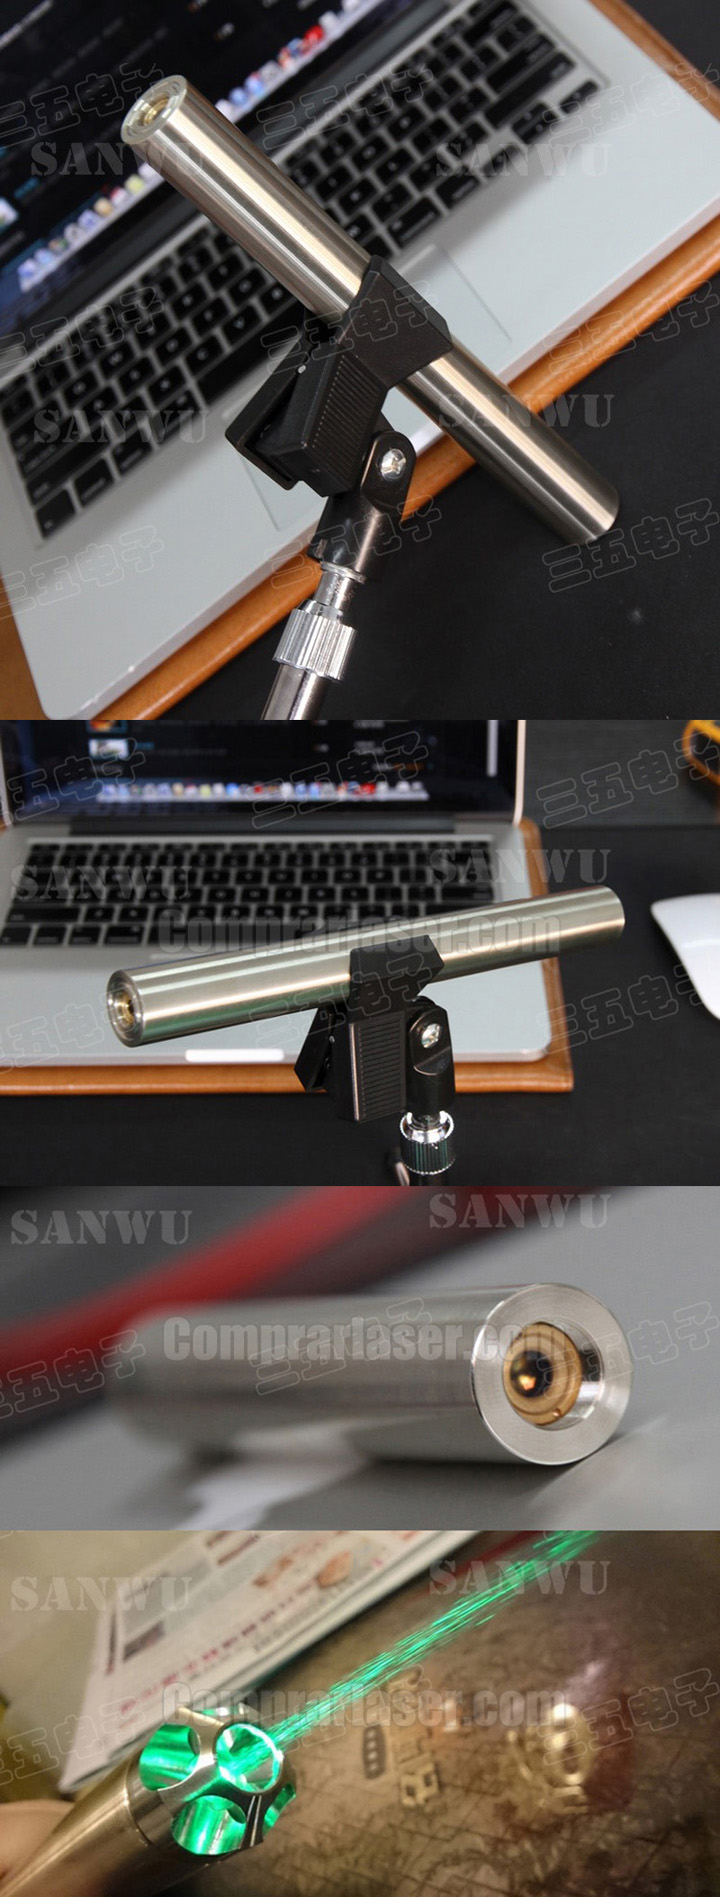 Sanwu Groene Laserpointer